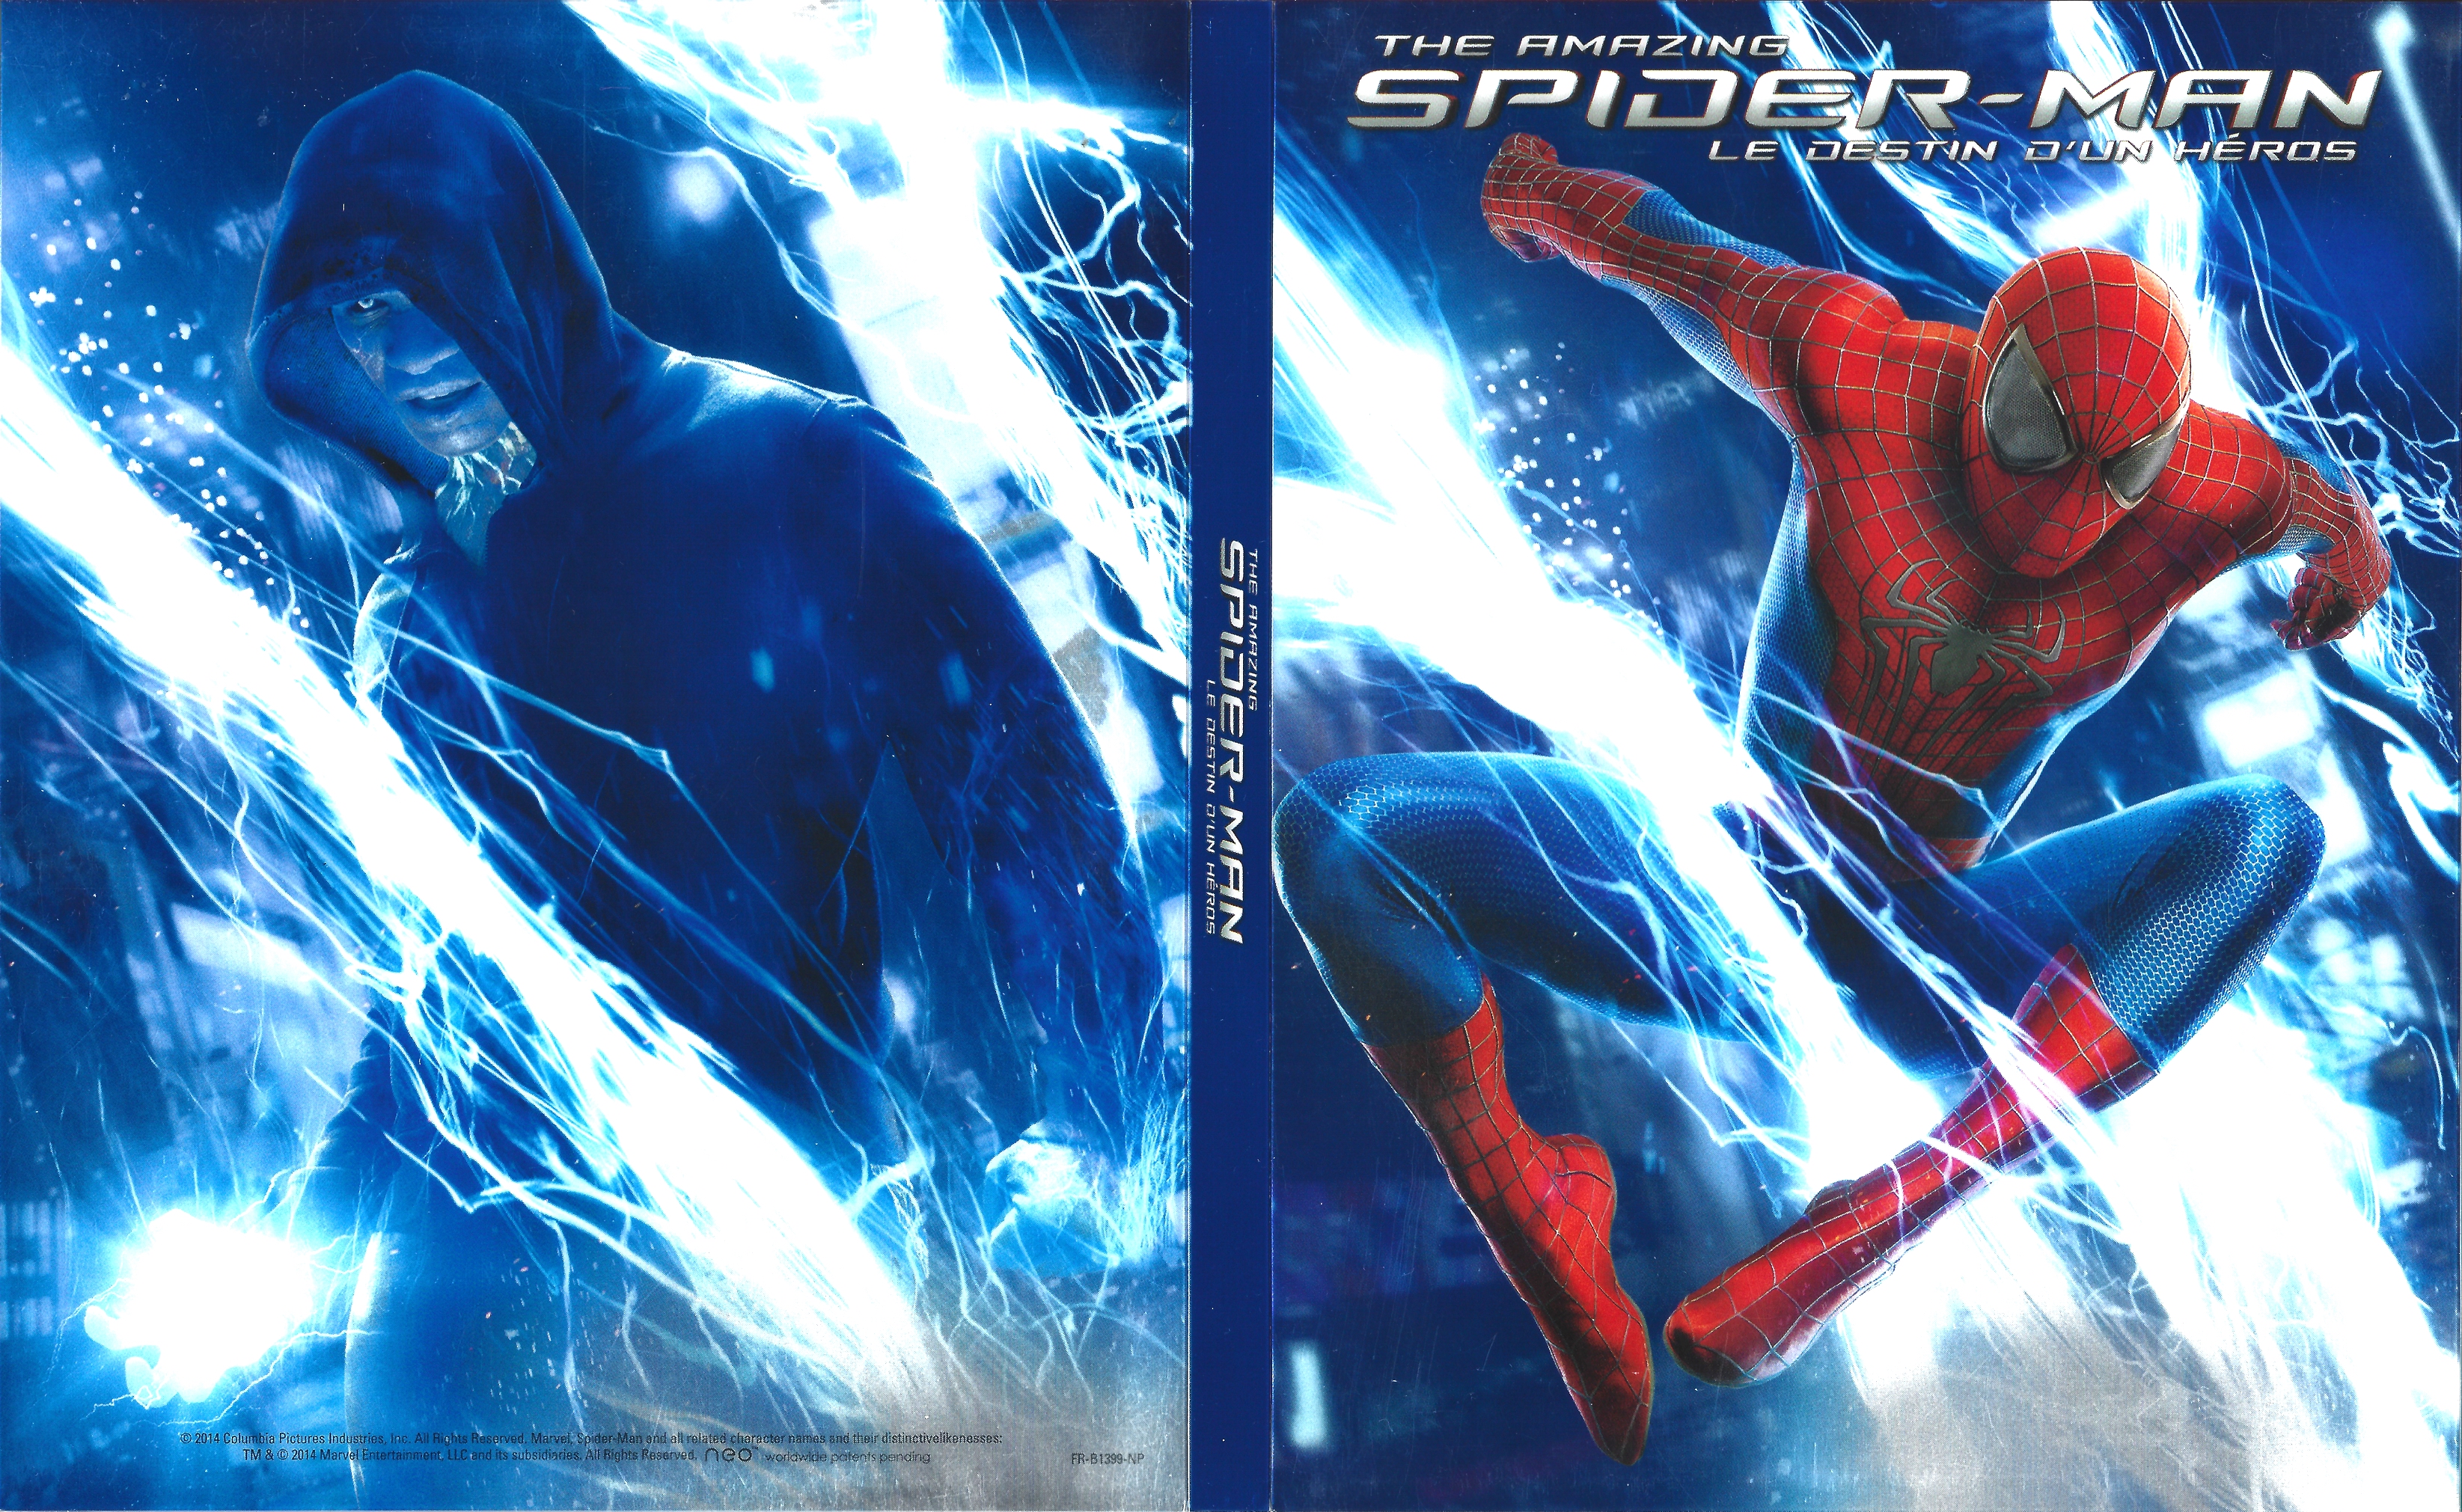 Jaquette DVD The Amazing Spider-Man : le destin d